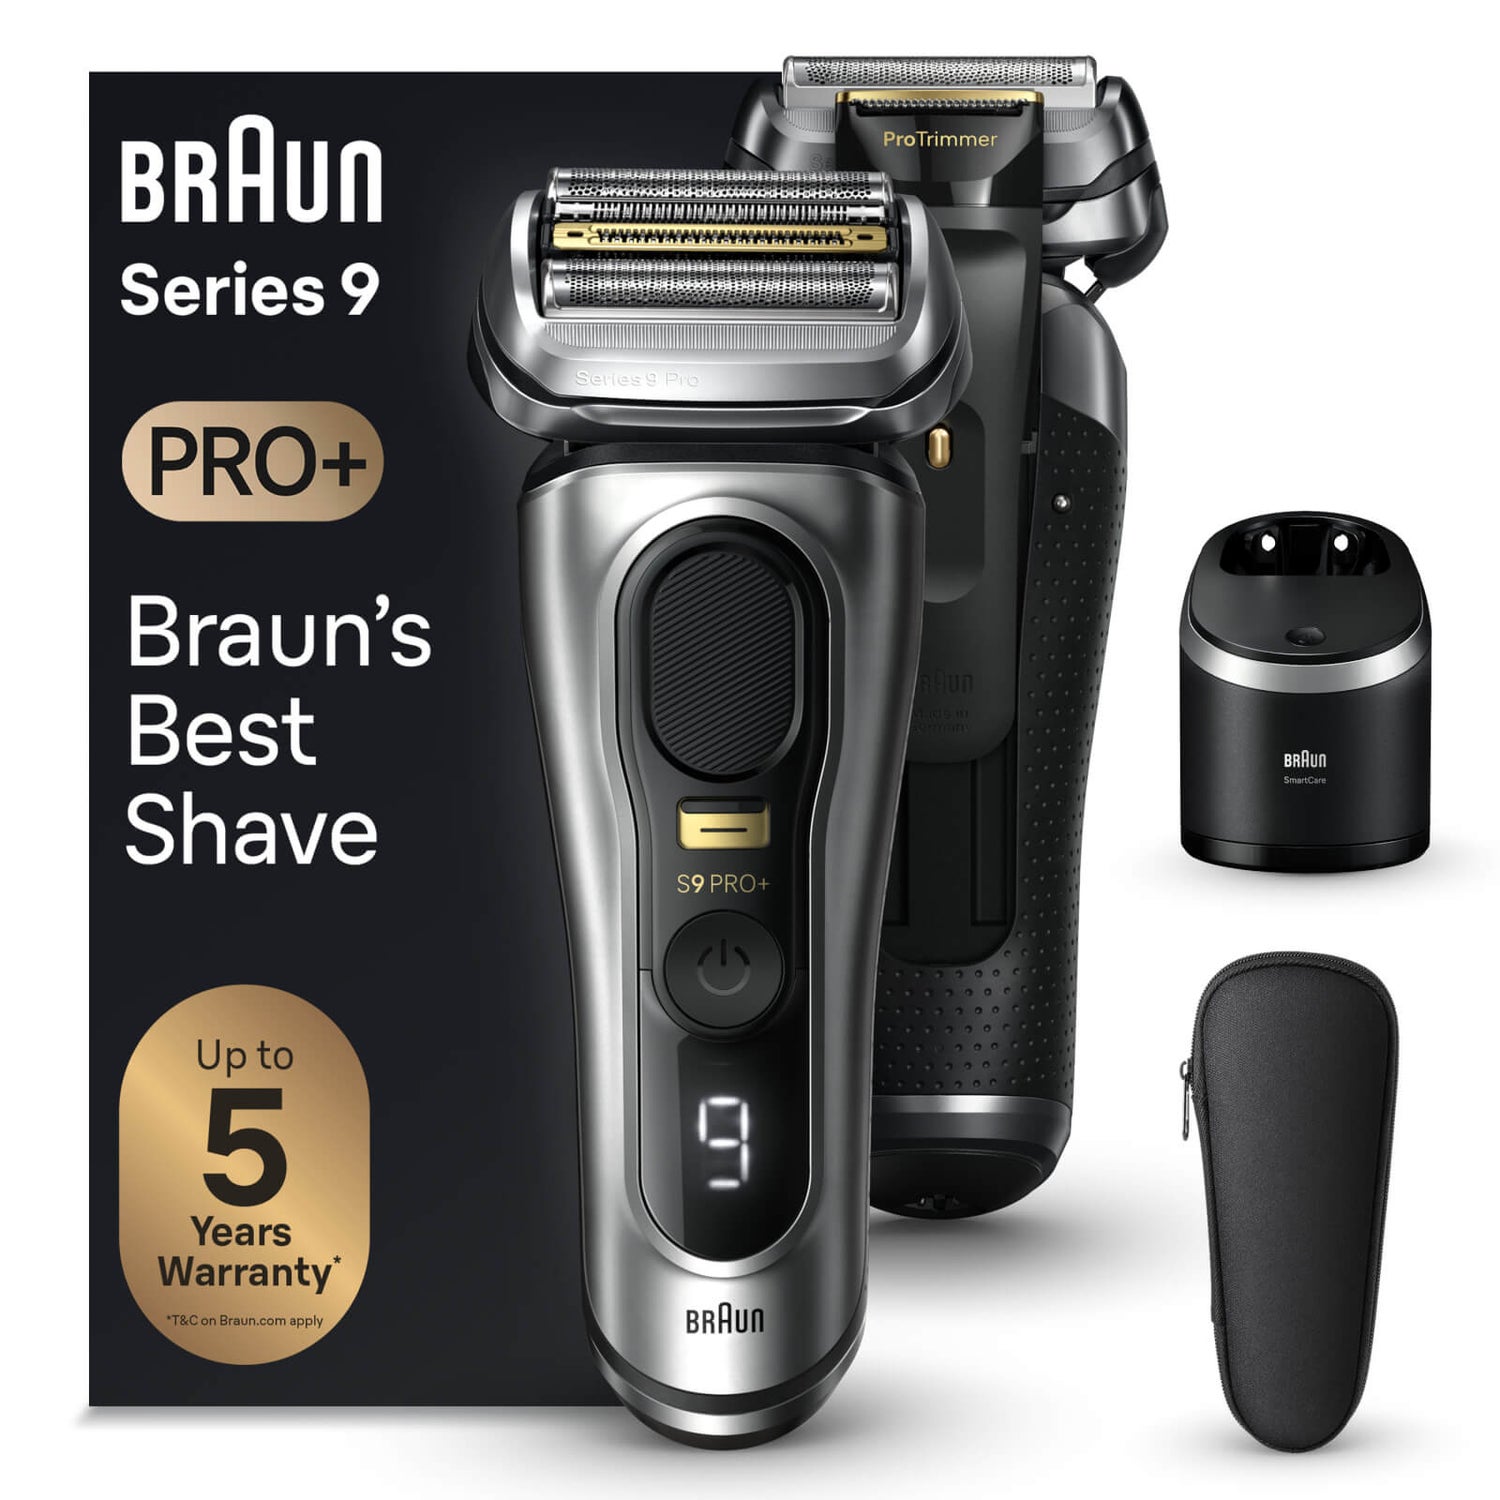 Braun Series 9 Pro+ Elektrorasierer, Reinigungsstation, Wet & Dry, 9567cc, Silber